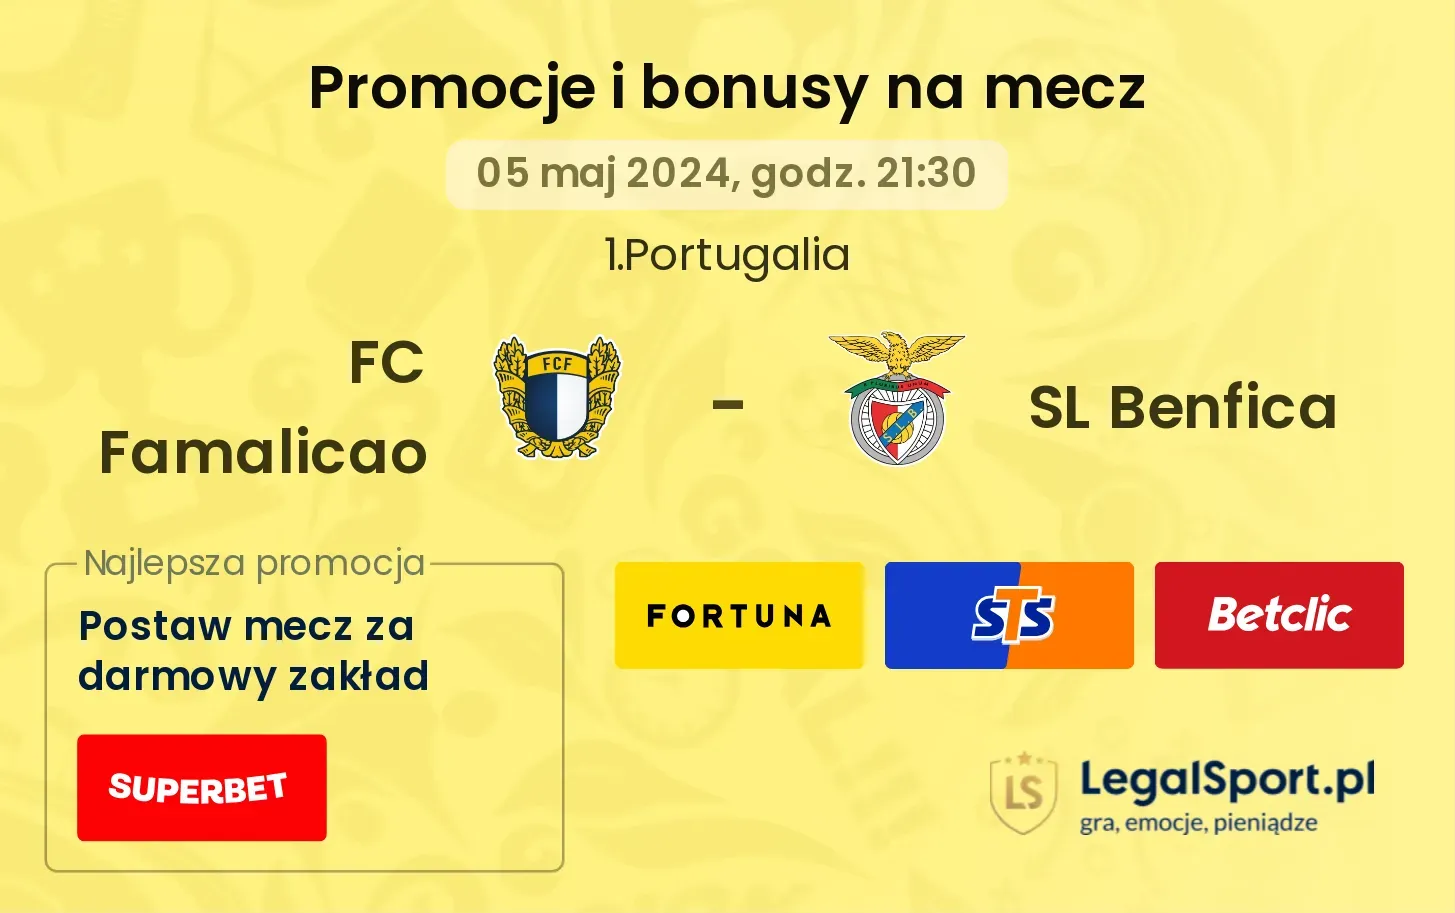 FC Famalicao - SL Benfica bonusy i promocje (05.05, 21:30)